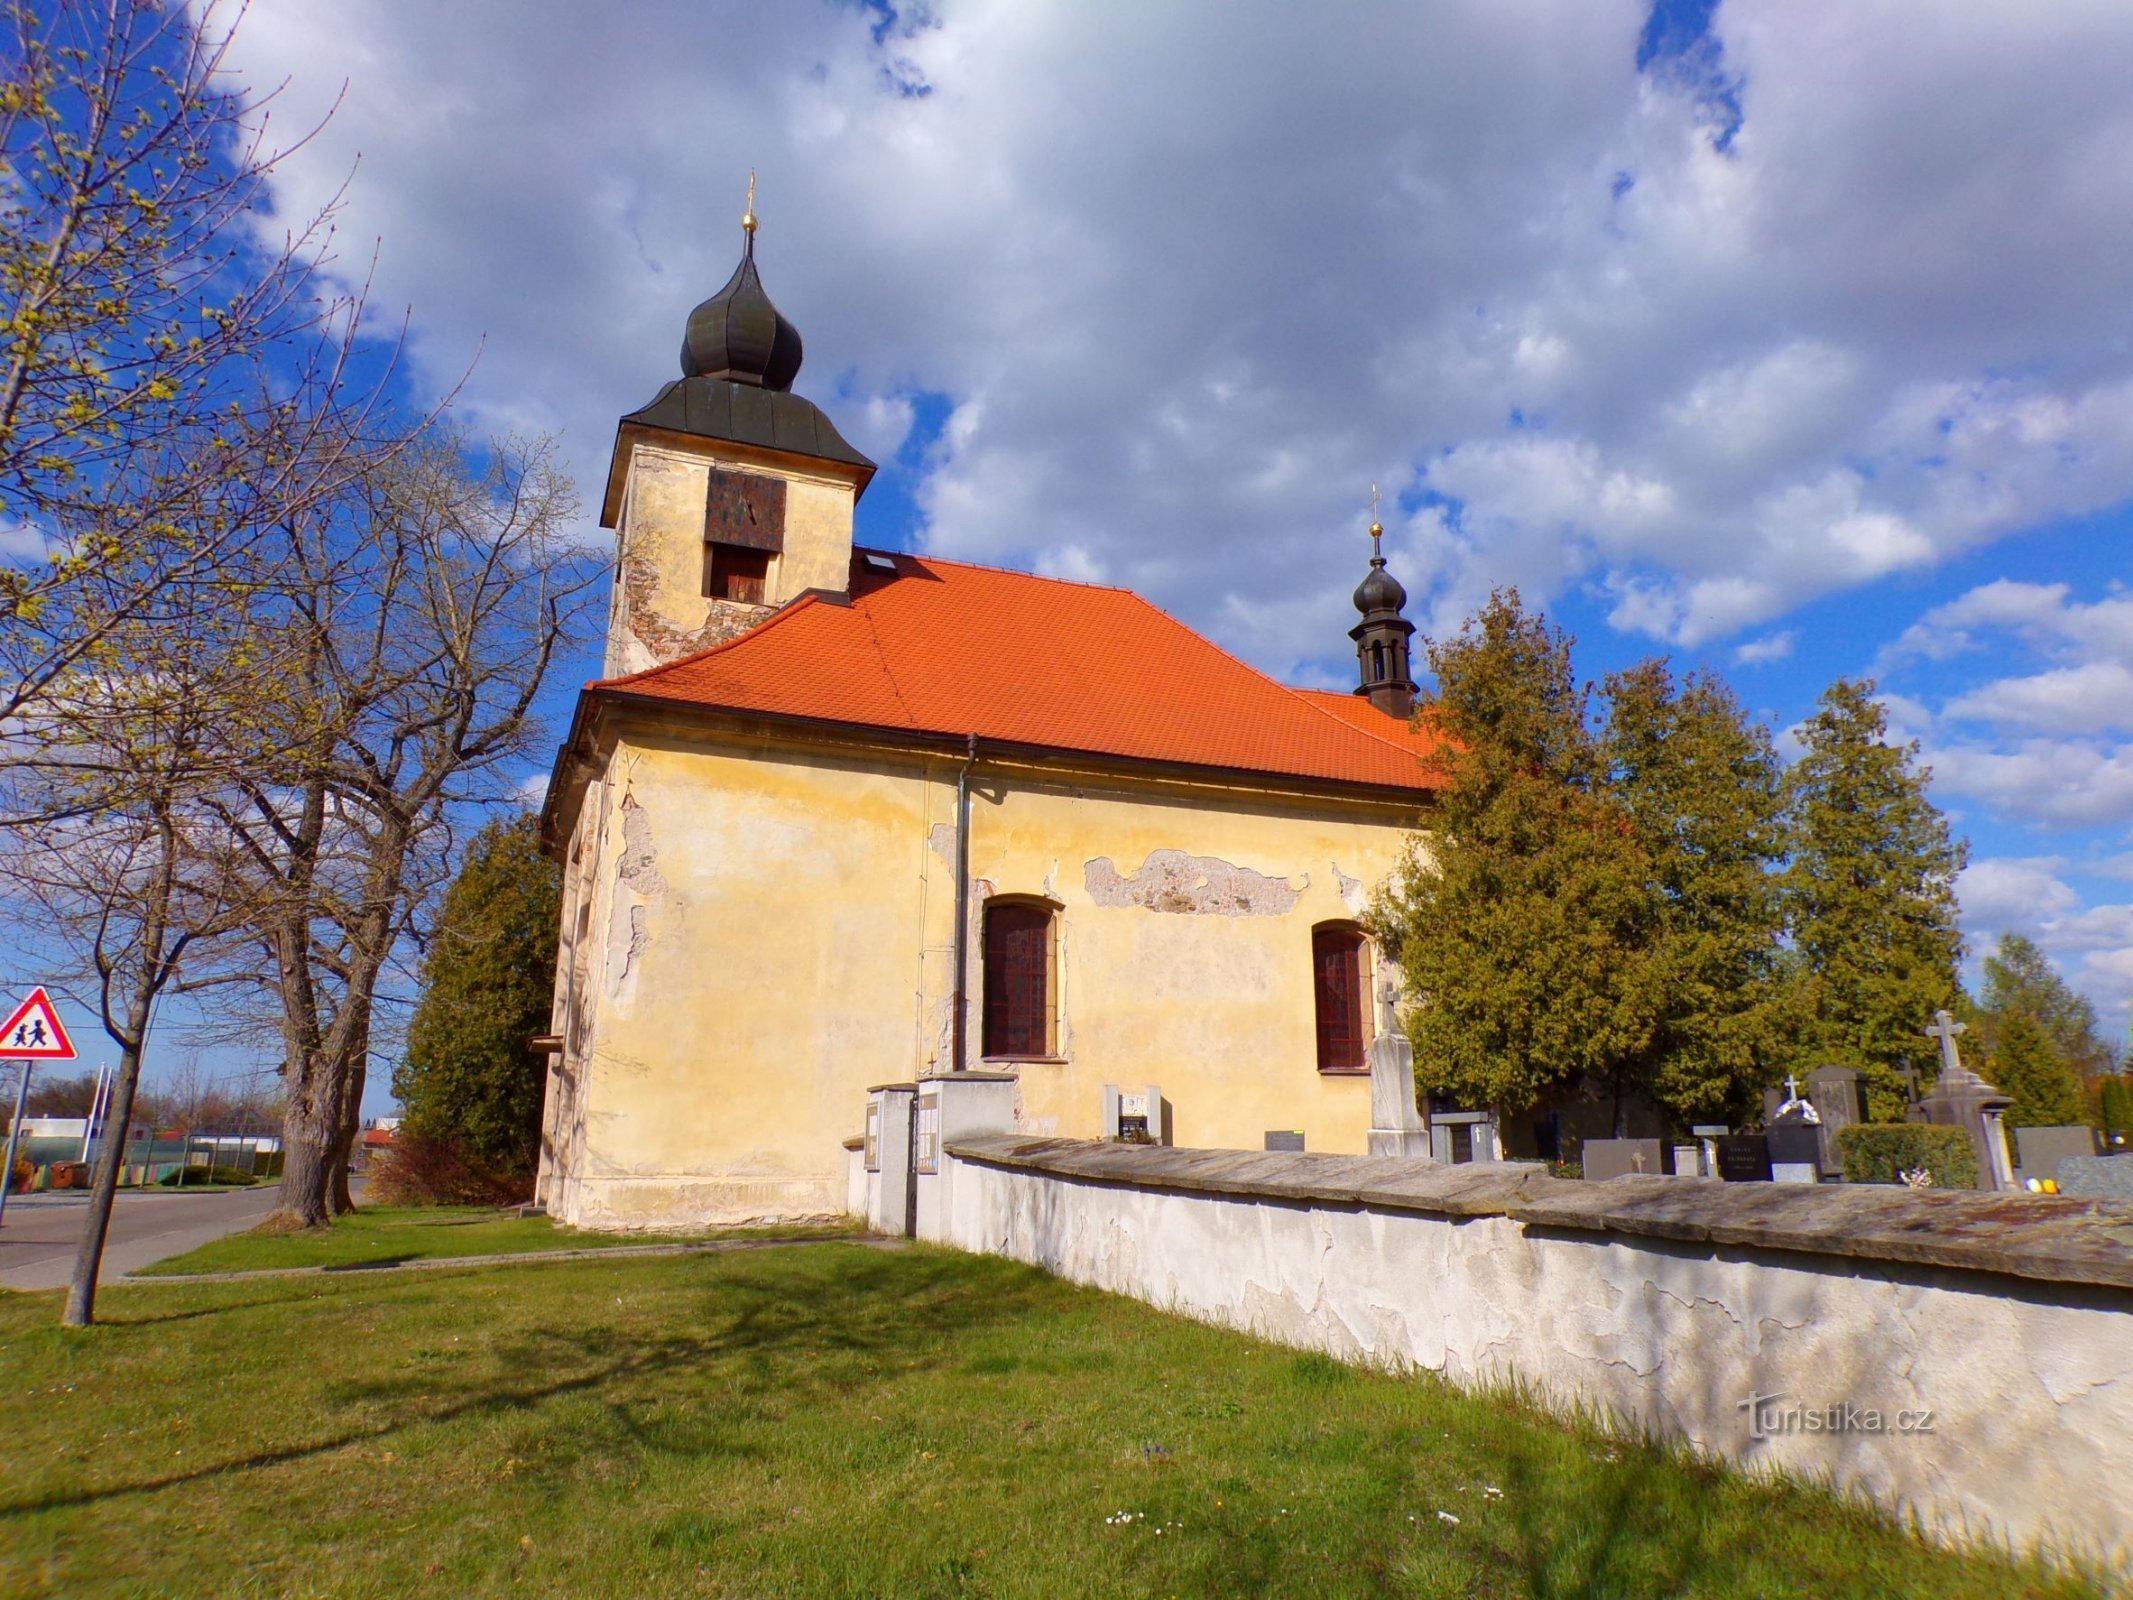 Церковь св. Иоанн Непомуцкий в Ланах на Дулке (Пардубице, 23.4.2022)